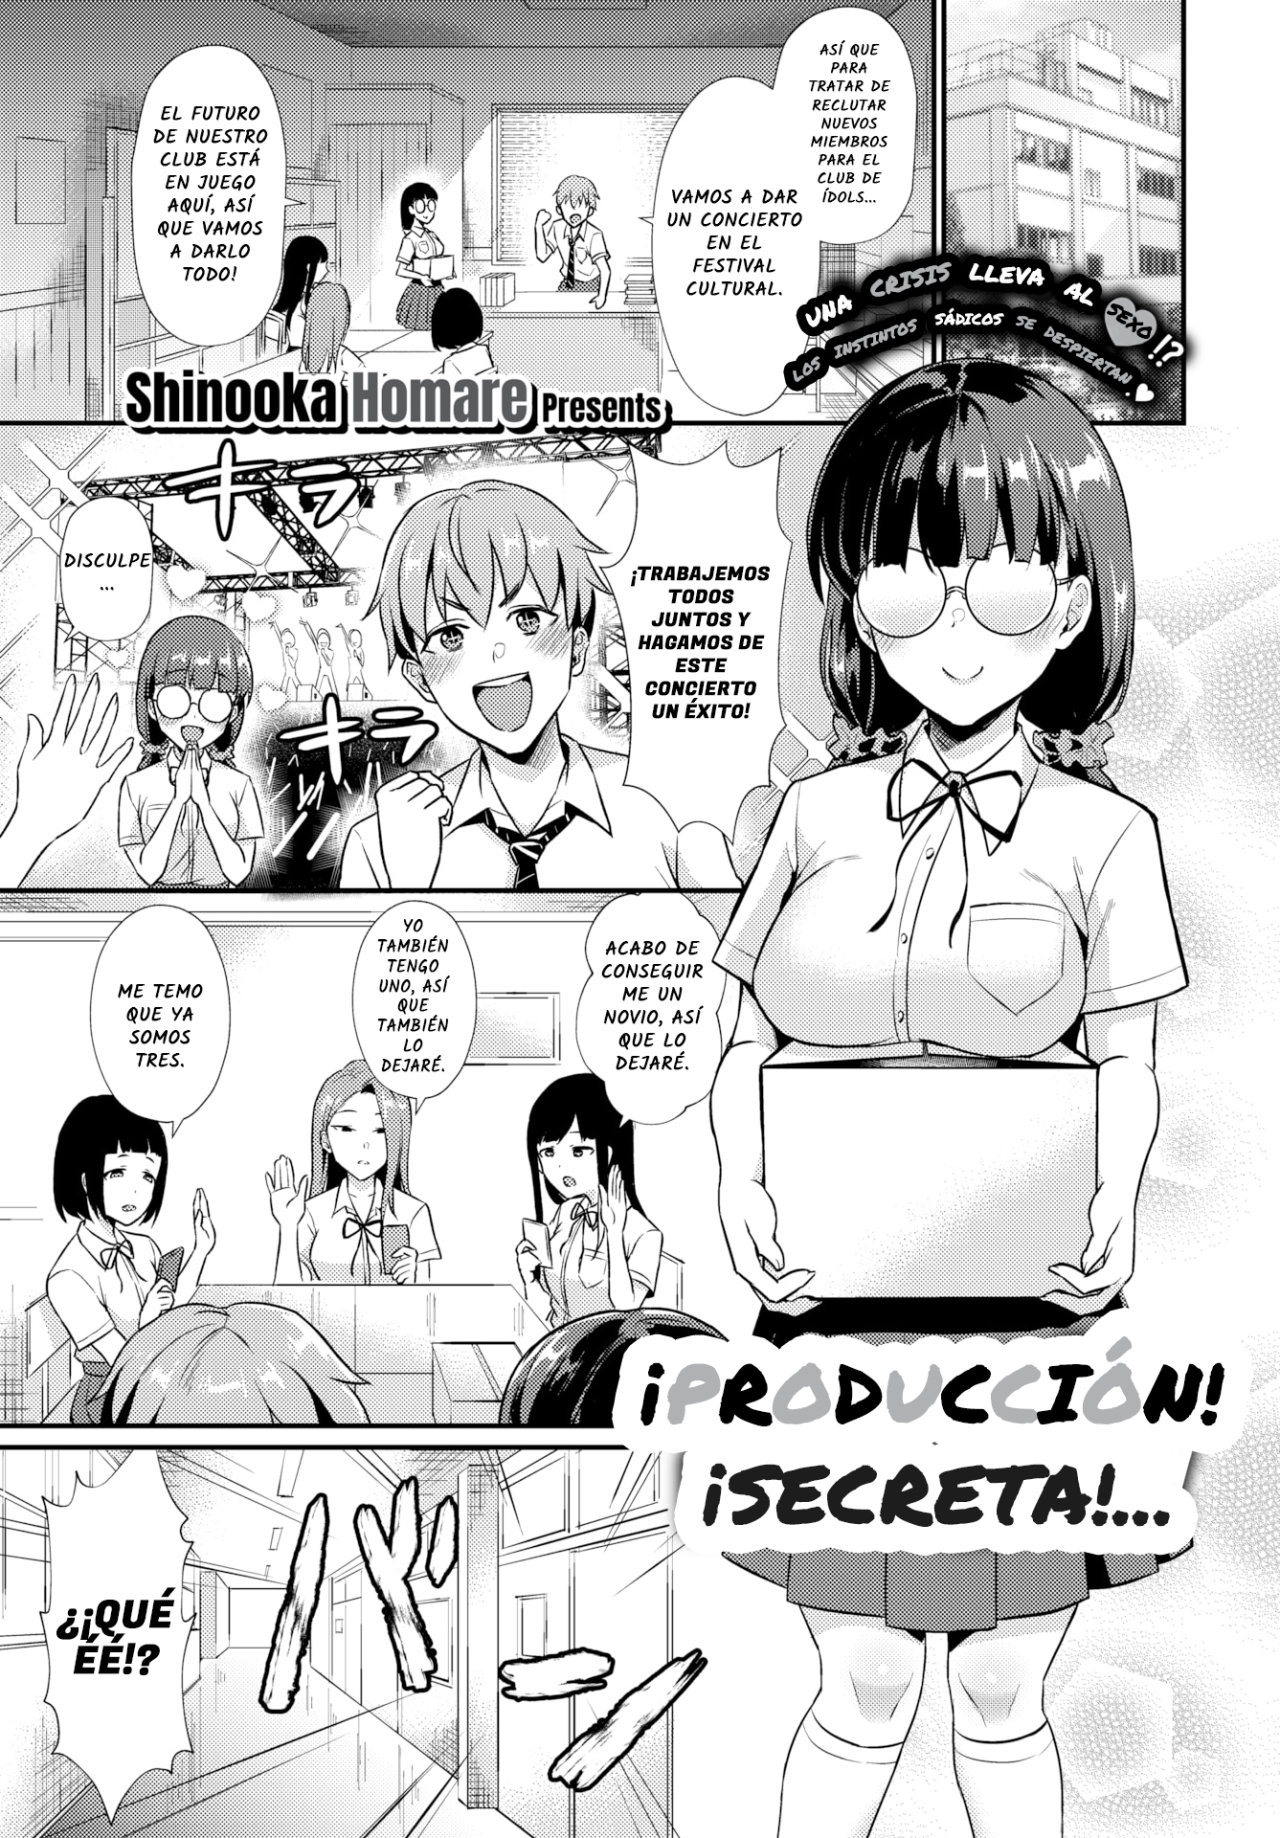 Produccion secreta! - Shinooka Homare - 0